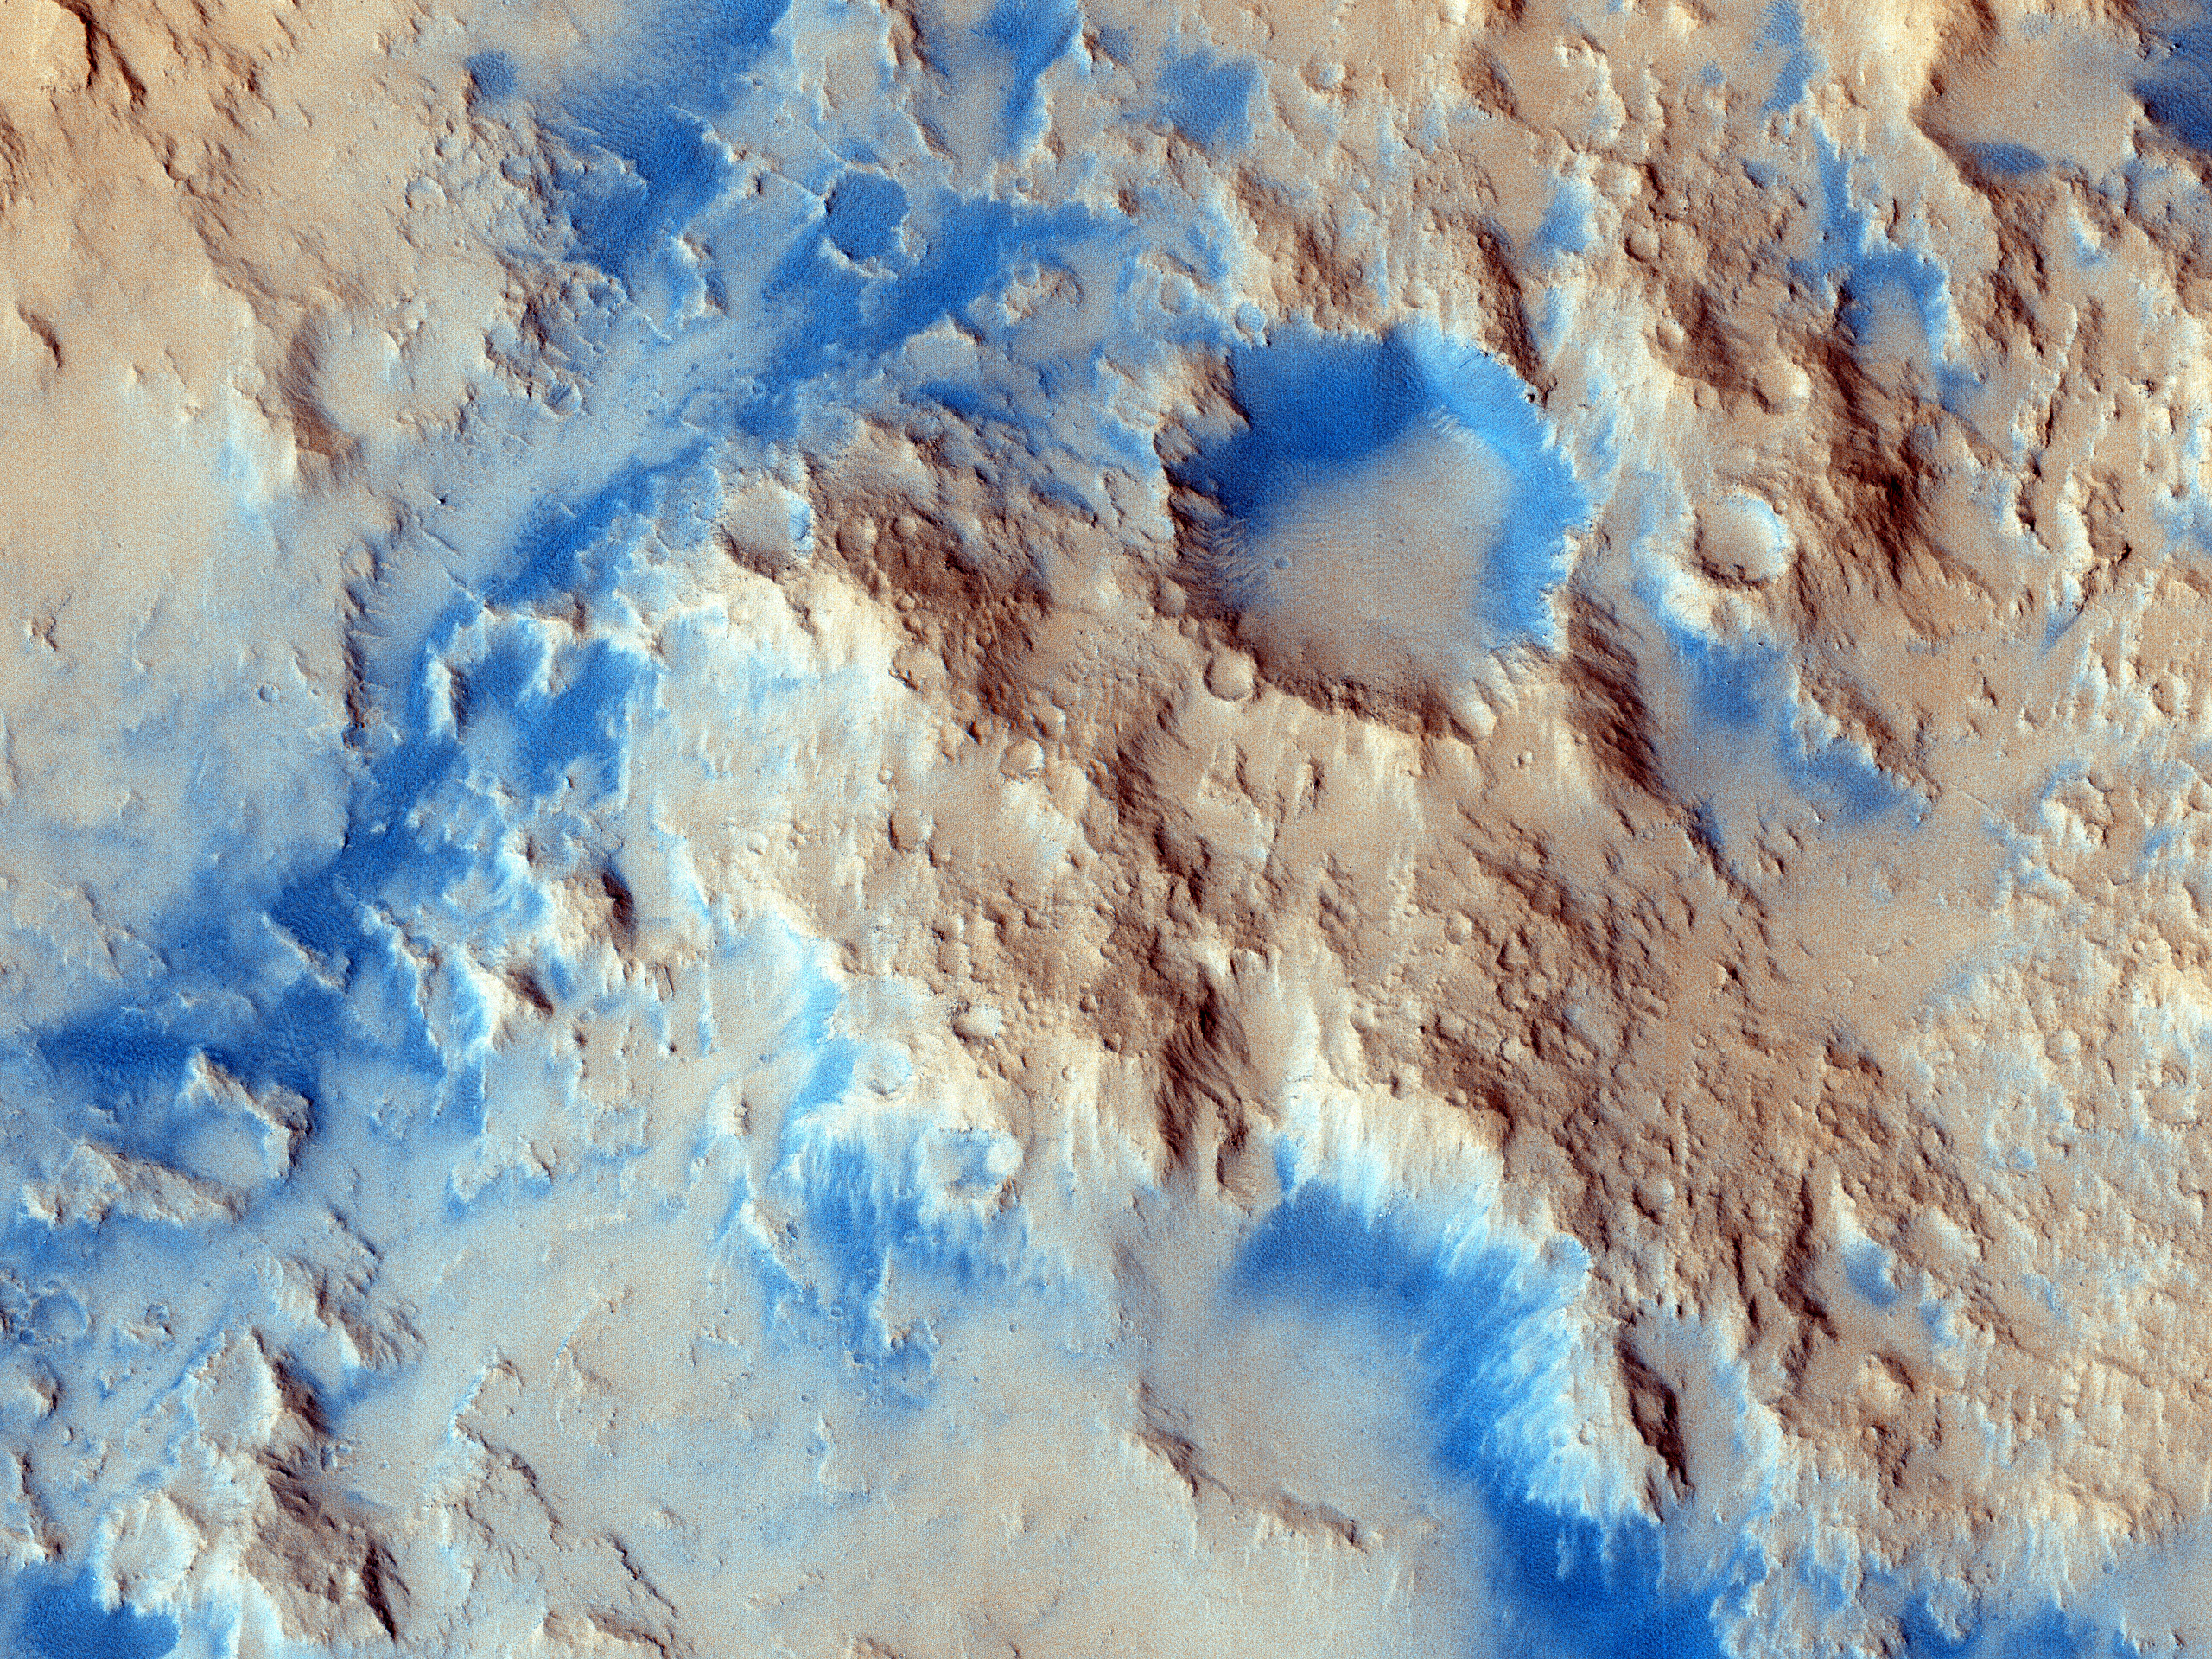 Sinuous Ridge Materials in Reuyl Crater